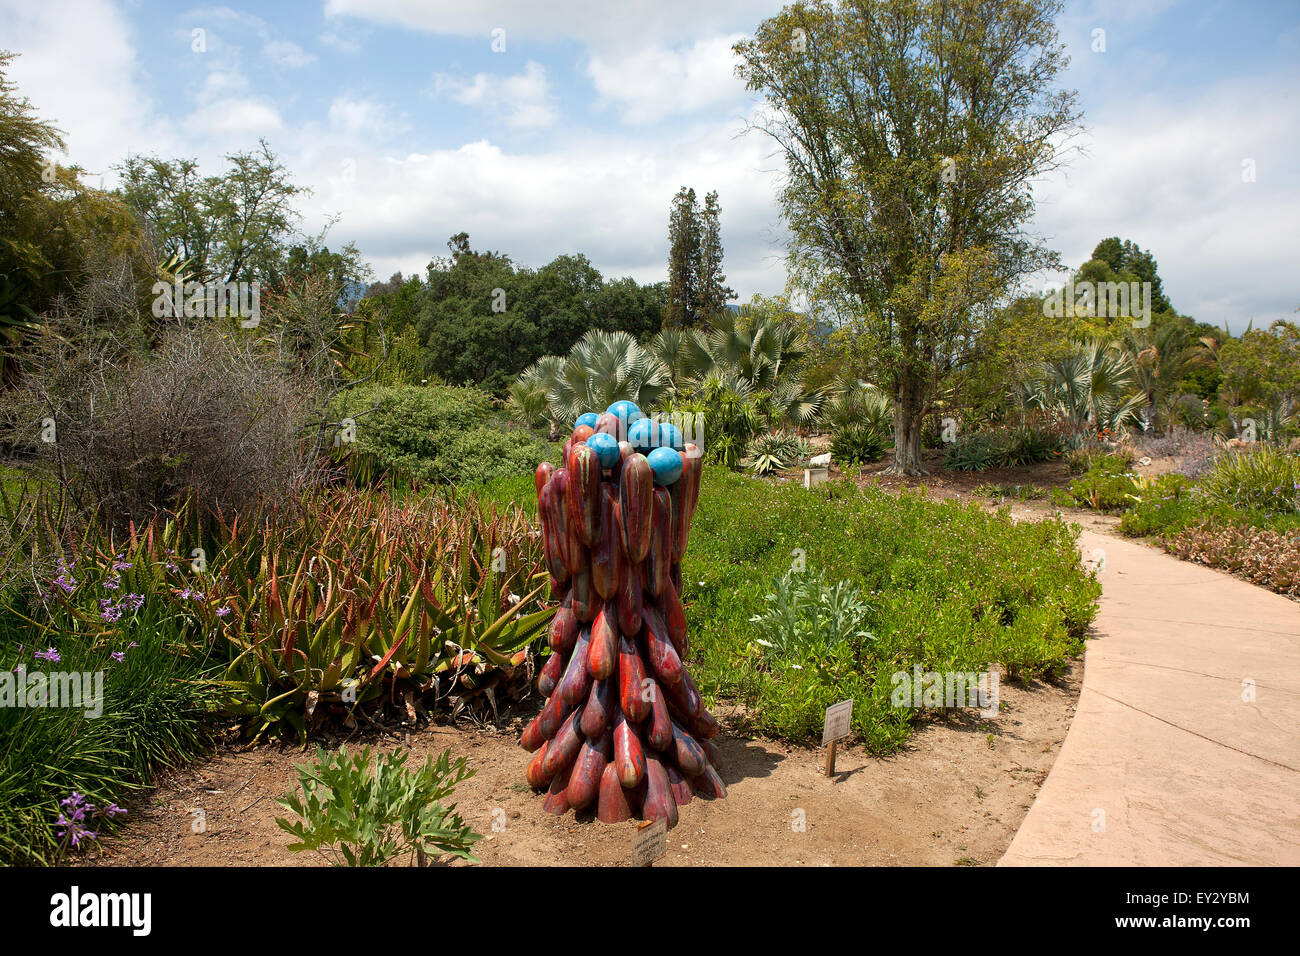 Gesamtansicht eines Gartens, Los Angeles County Arboretum und Botanischer Garten, Arcadia, Kalifornien, Vereinigte Staaten von Amerika Stockfoto